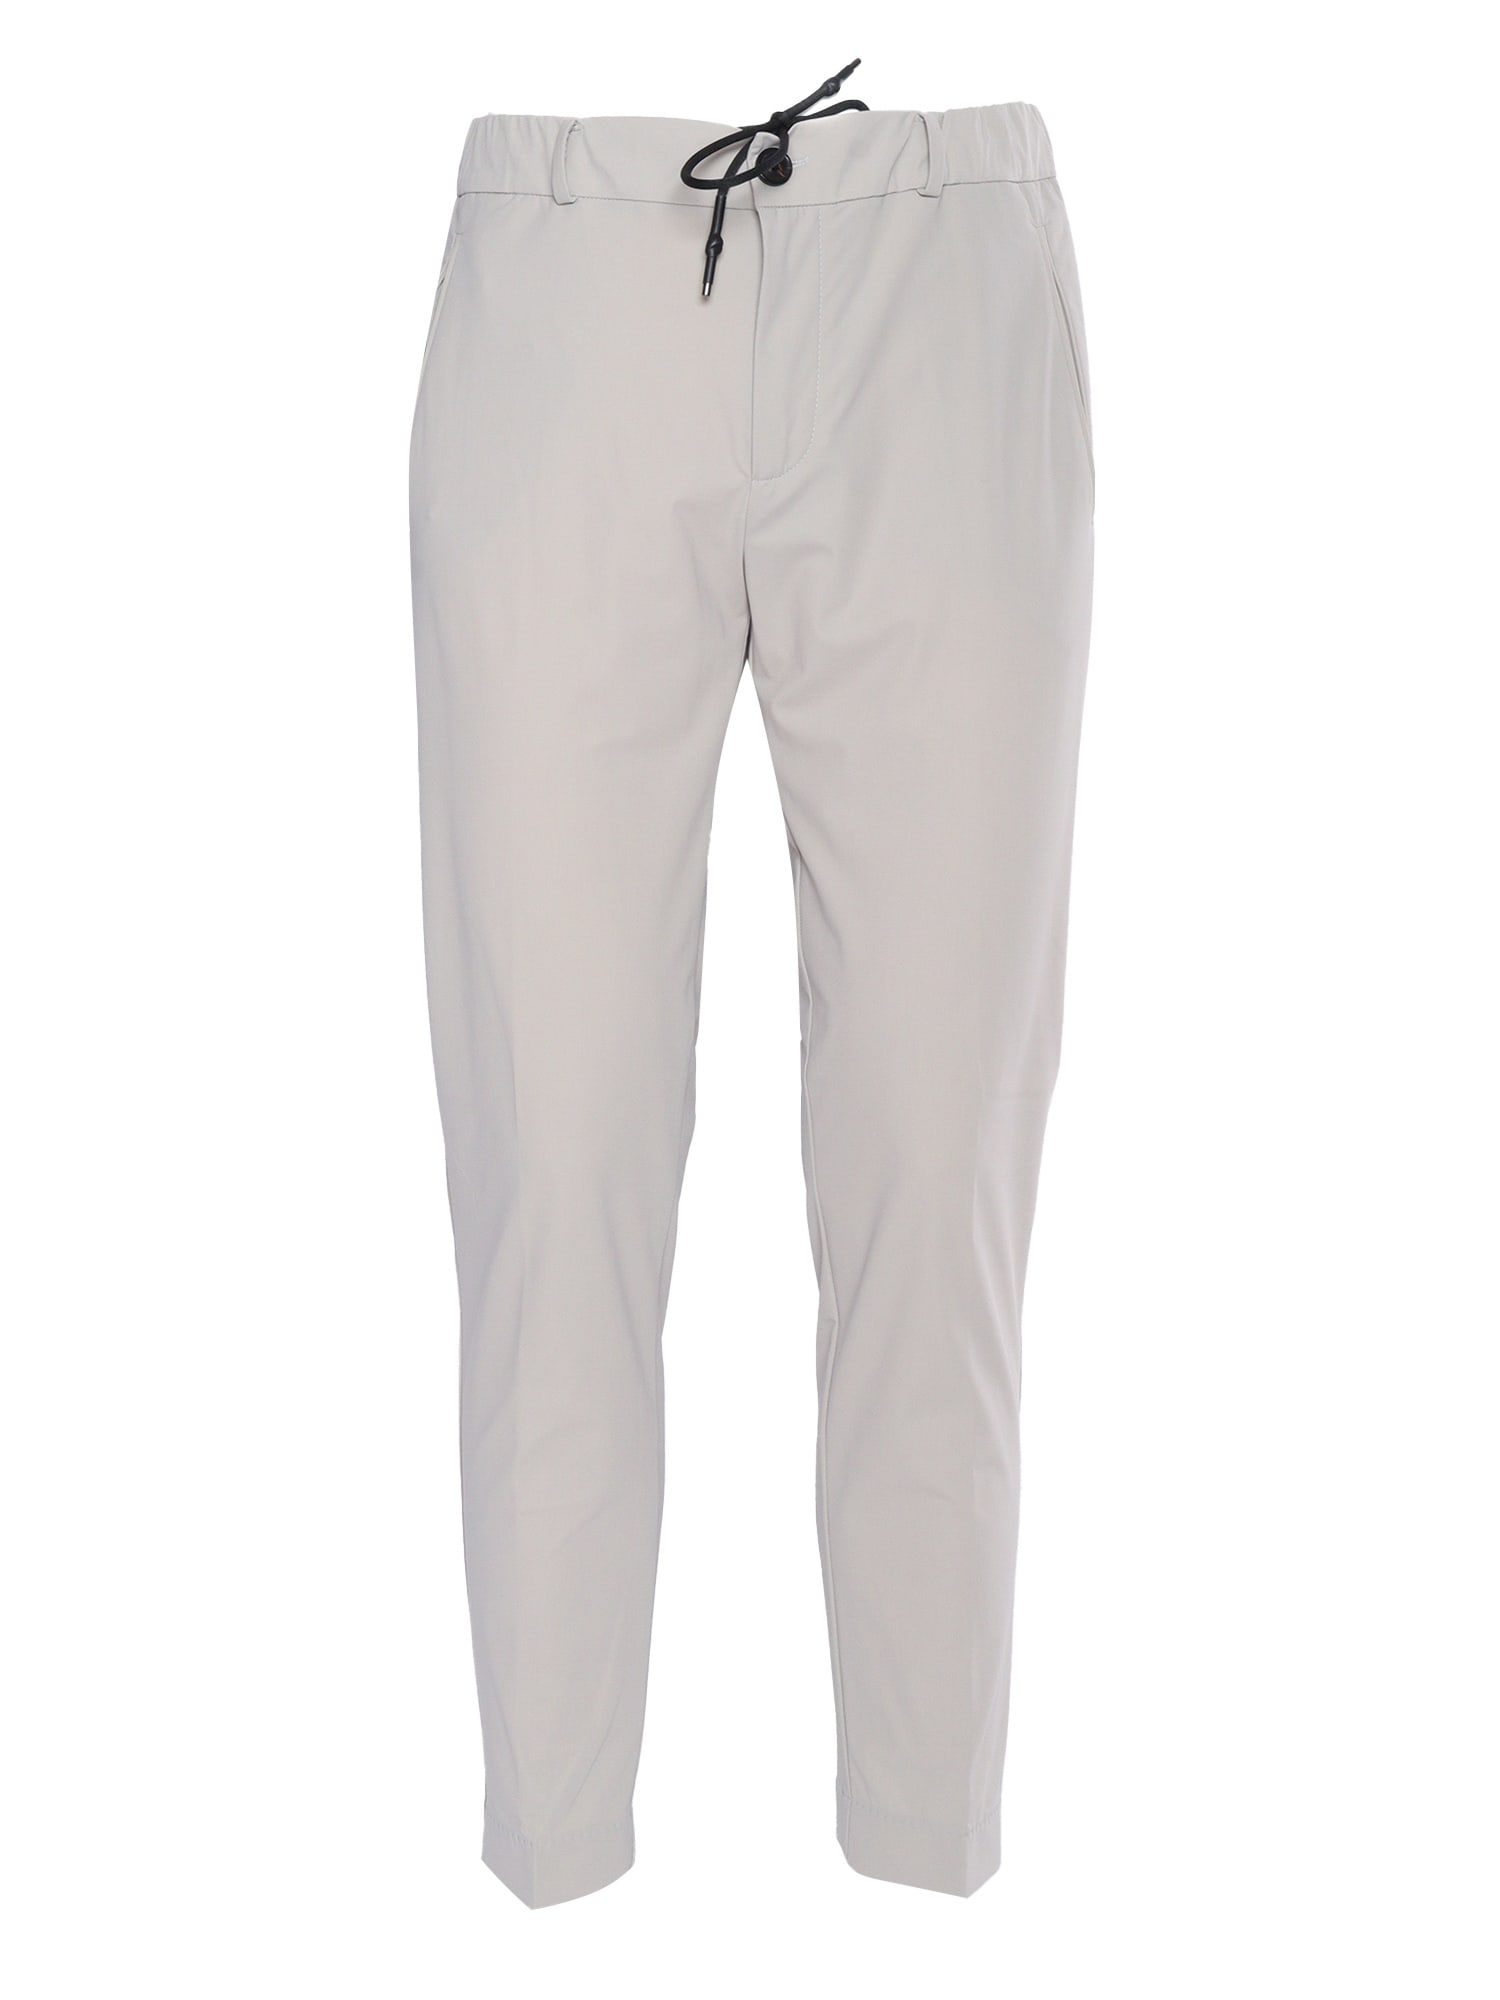 Rrd - Roberto Ricci Design Grey Chino Trousers In White